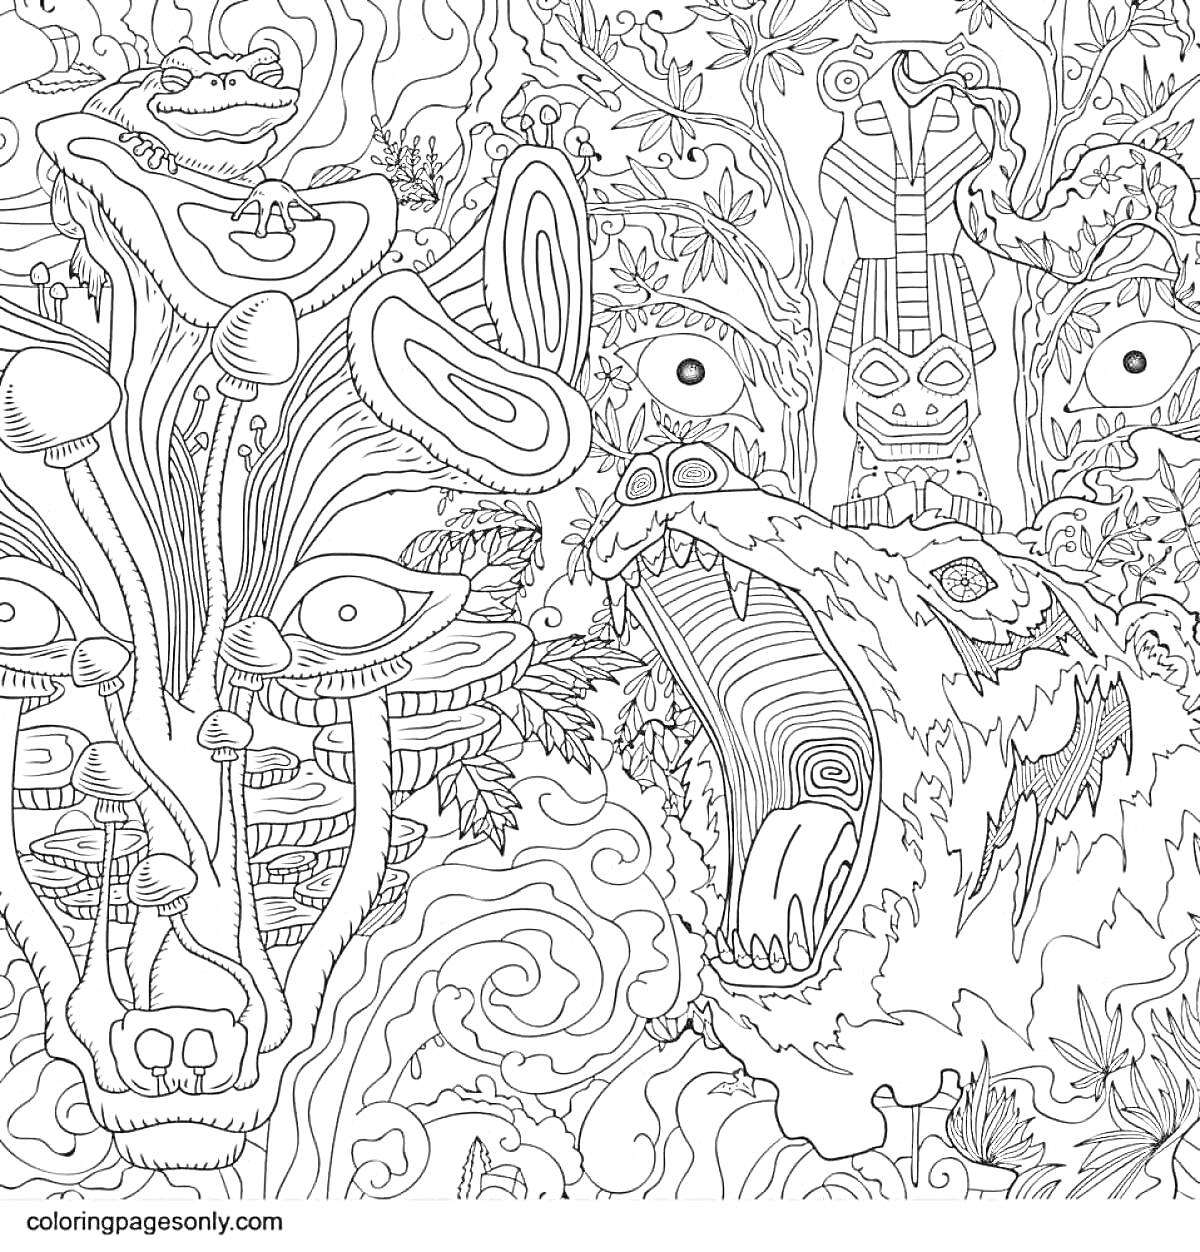 Раскраска Психоделический лес с грибами и медведем